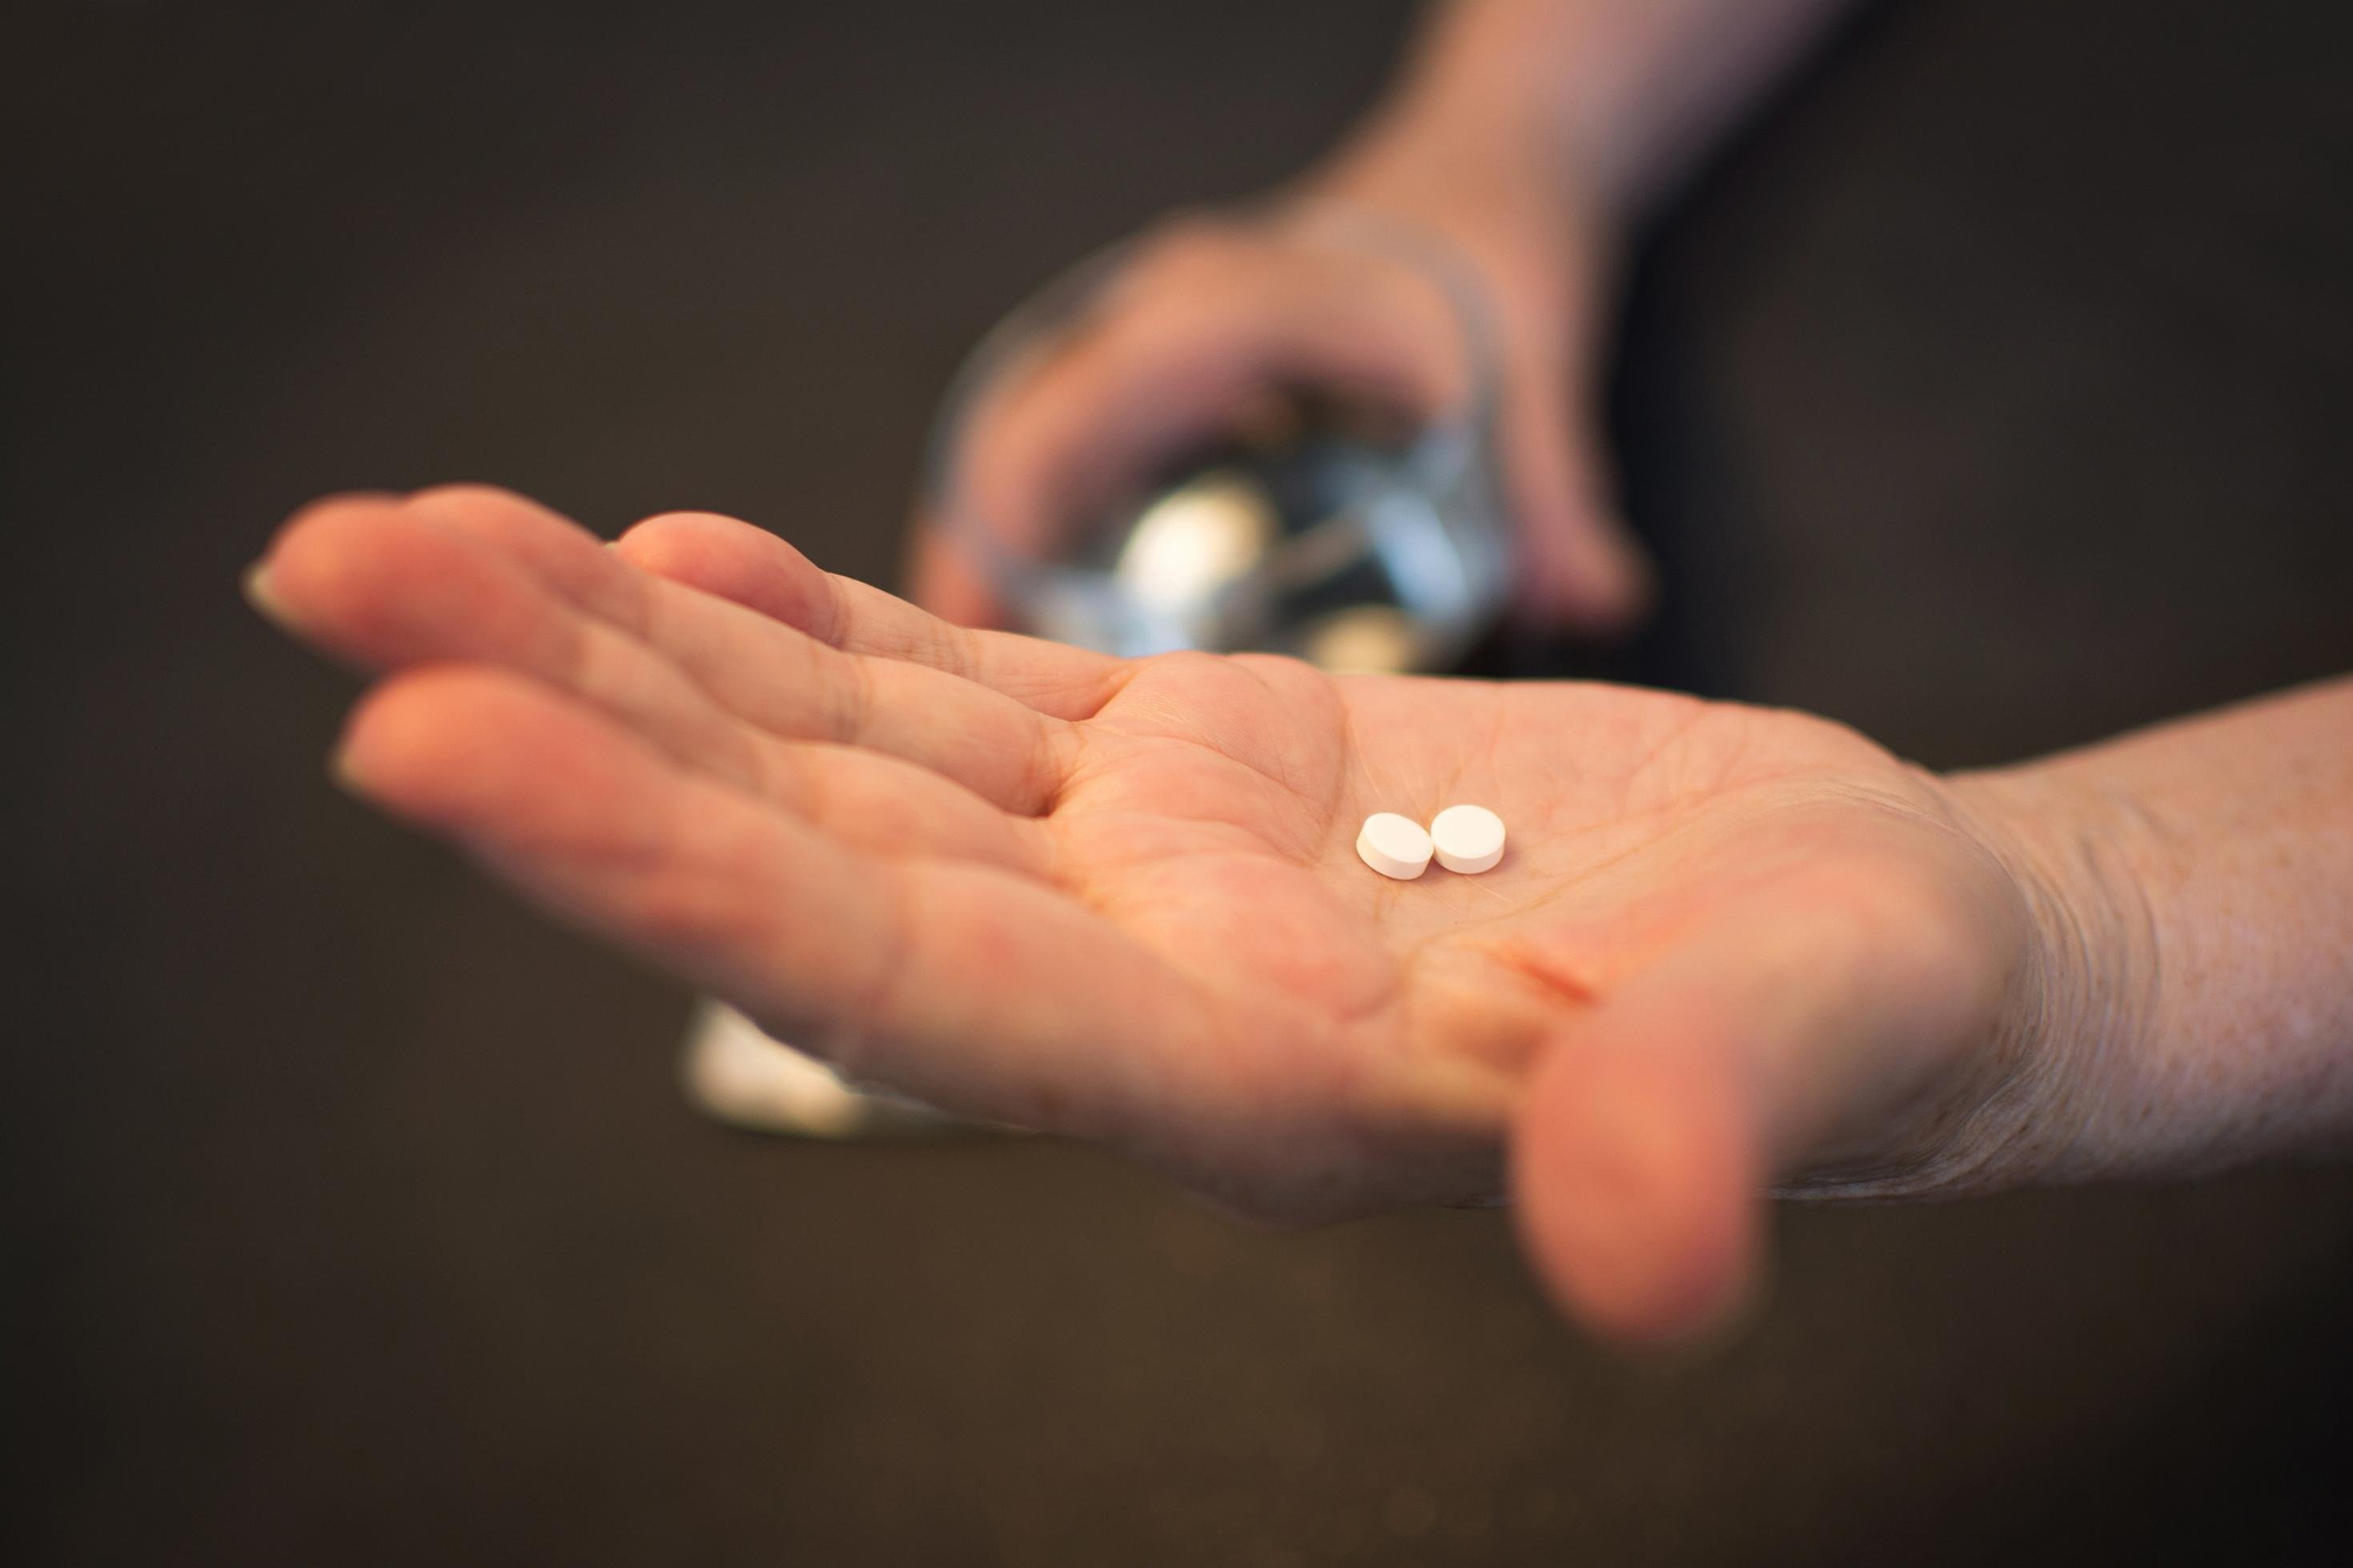 Auf der Hand eines Mannes liegen zwei Tabletten.